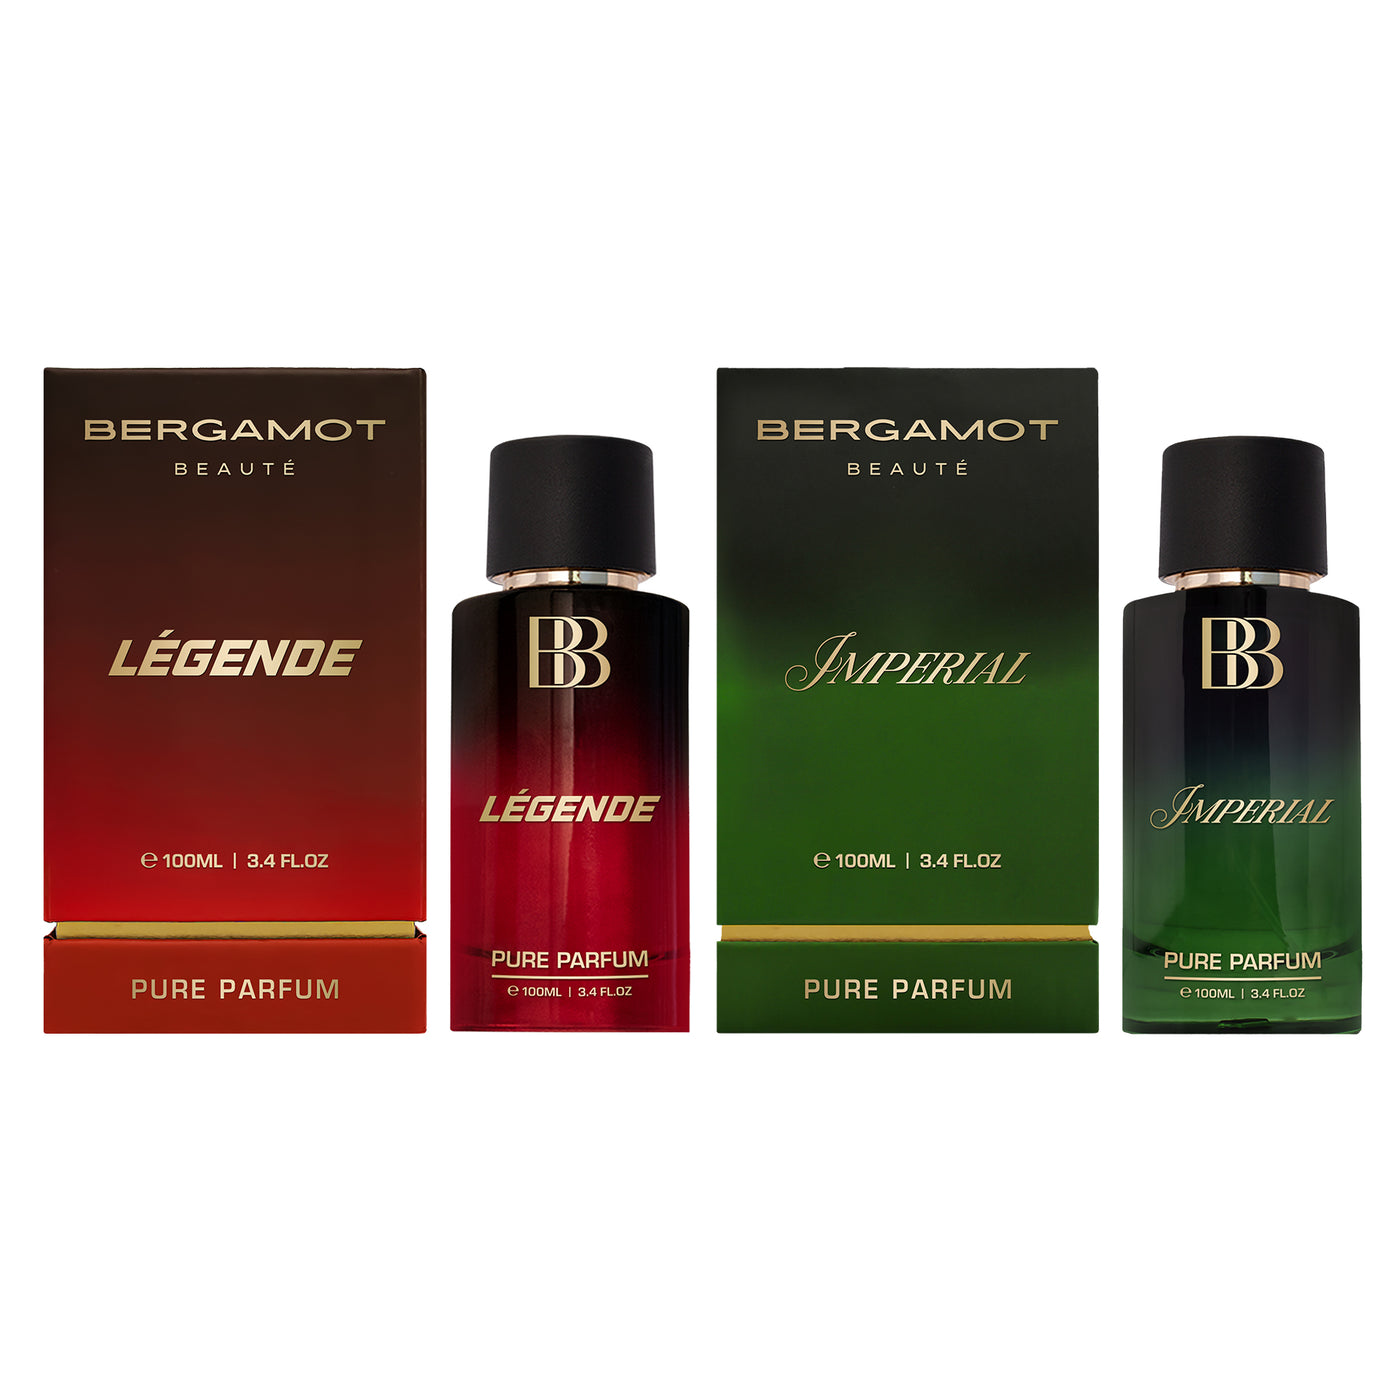 LÉGENDE + IMPERIAL Pure Parfum Combo, 2 X 100ml